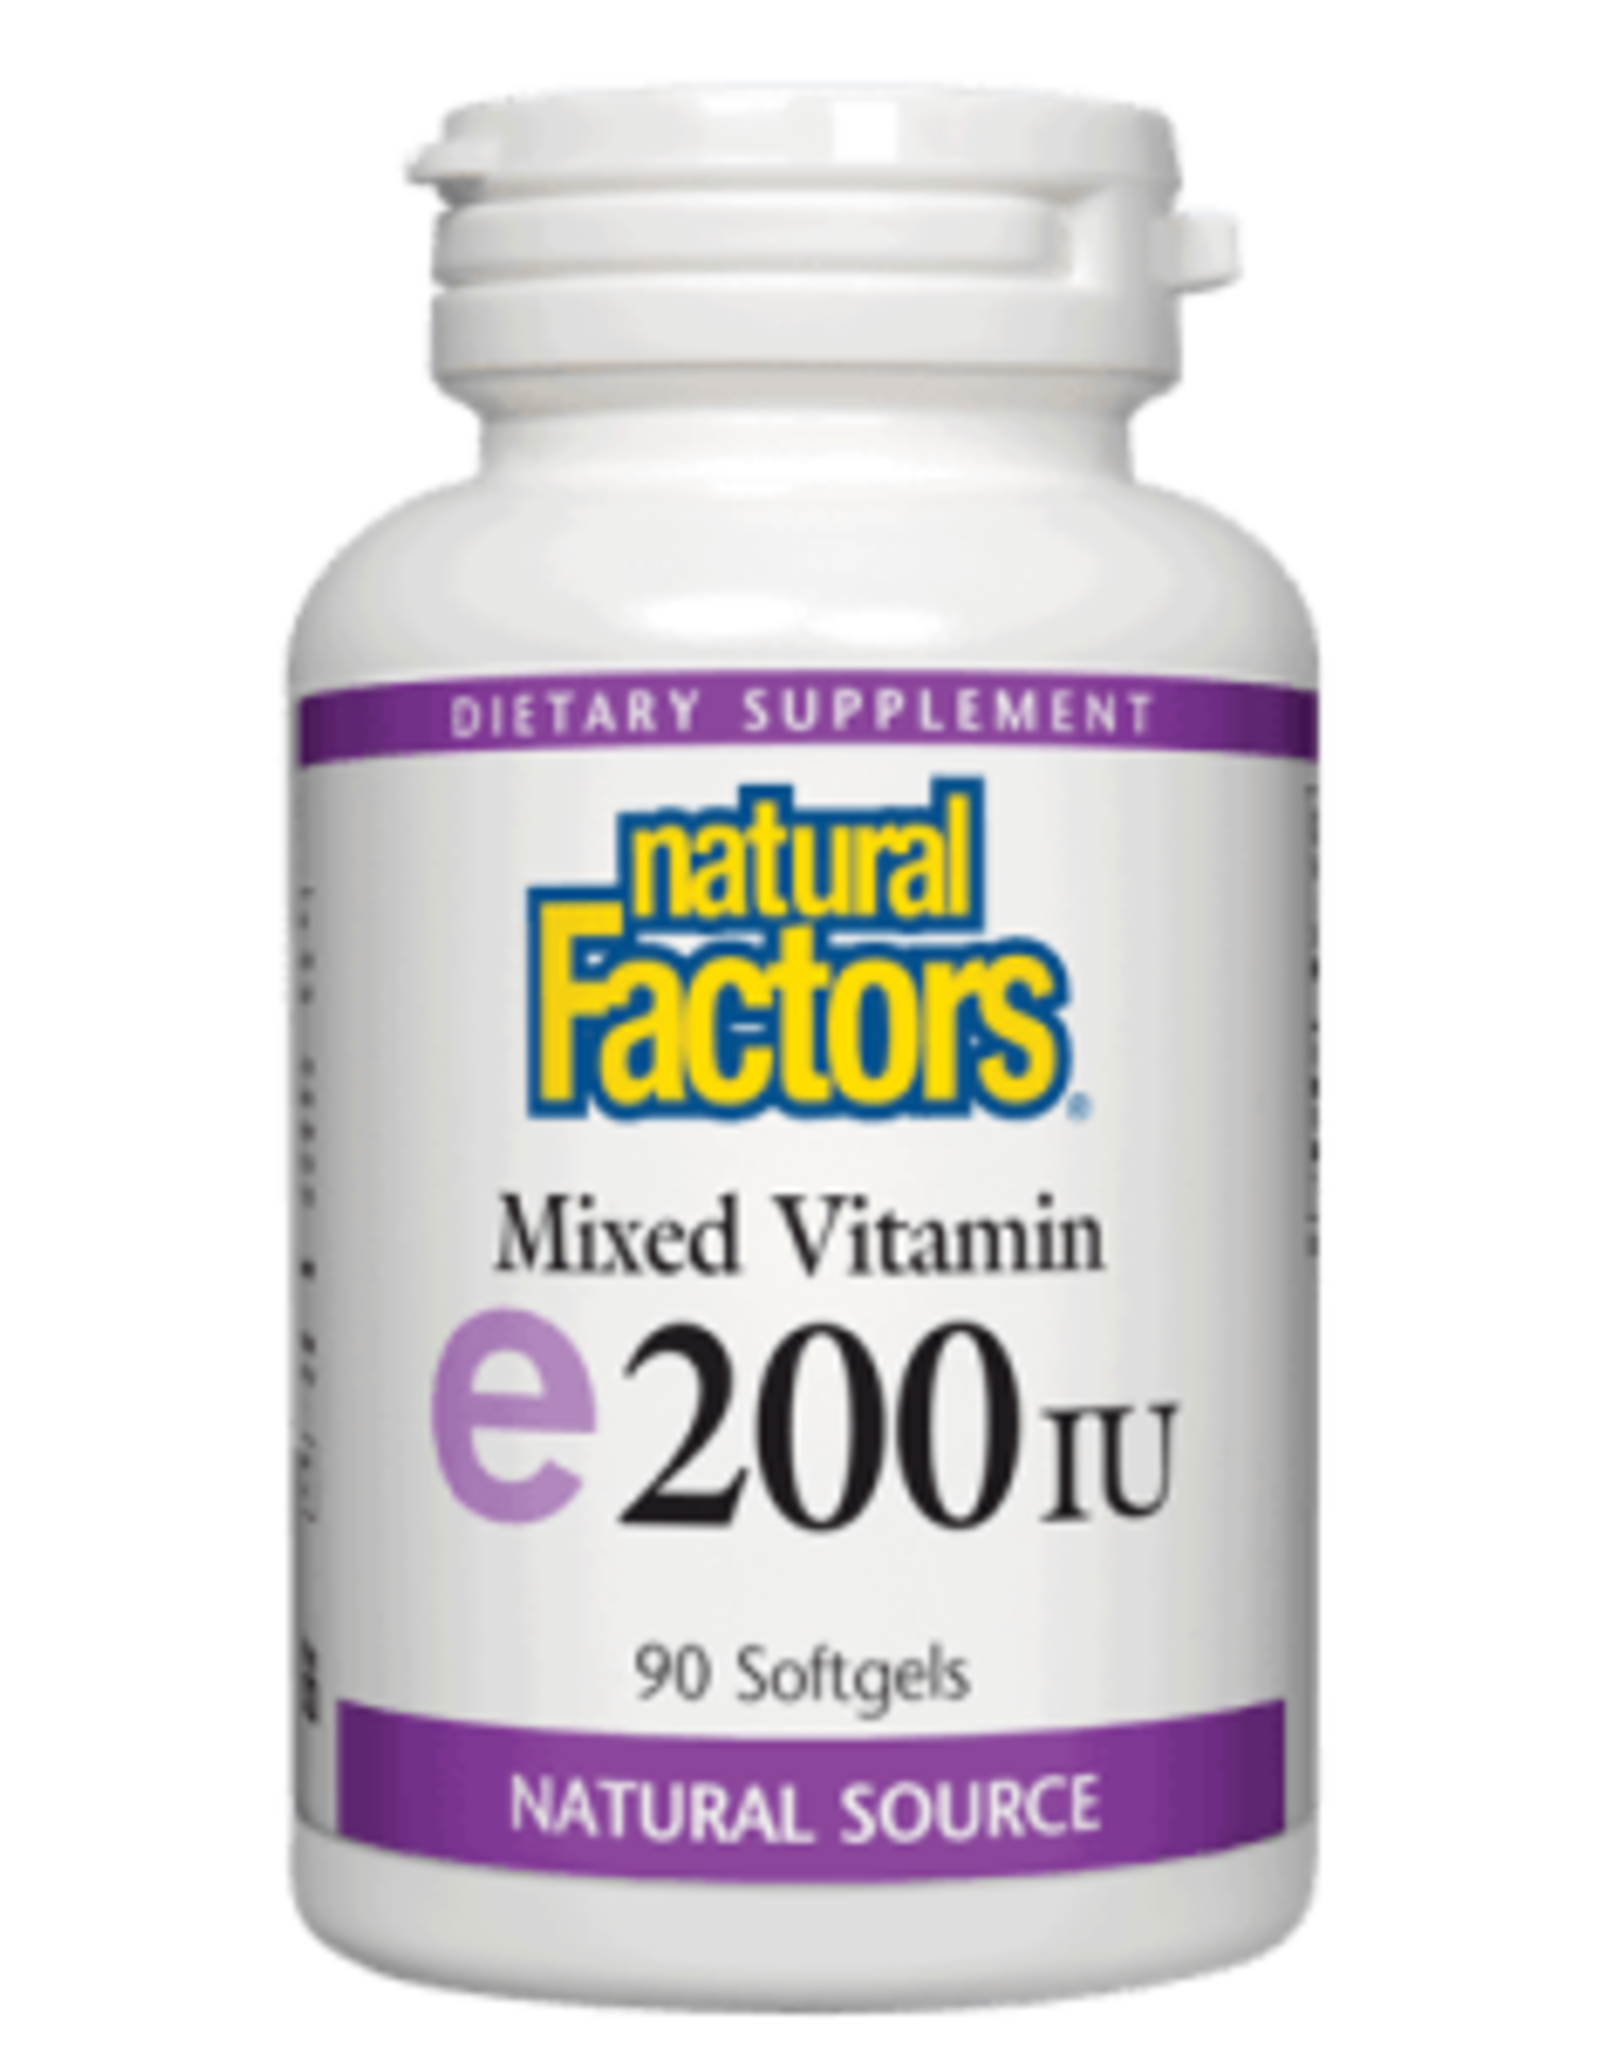 Natural Factors Vit E 200 IU mixed (d-alpha tocopherol) 90/SG